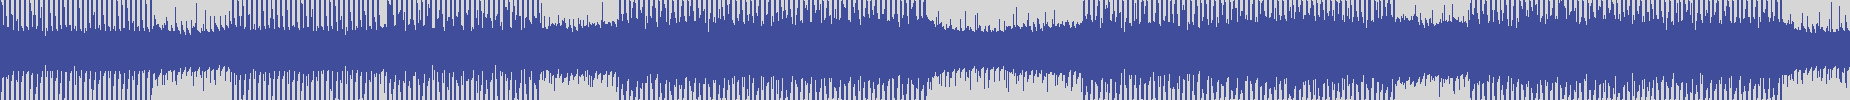 nf_boyz_records [NFY073] Mr. Tech - Beats for You [Nebular Mix] audio wave form